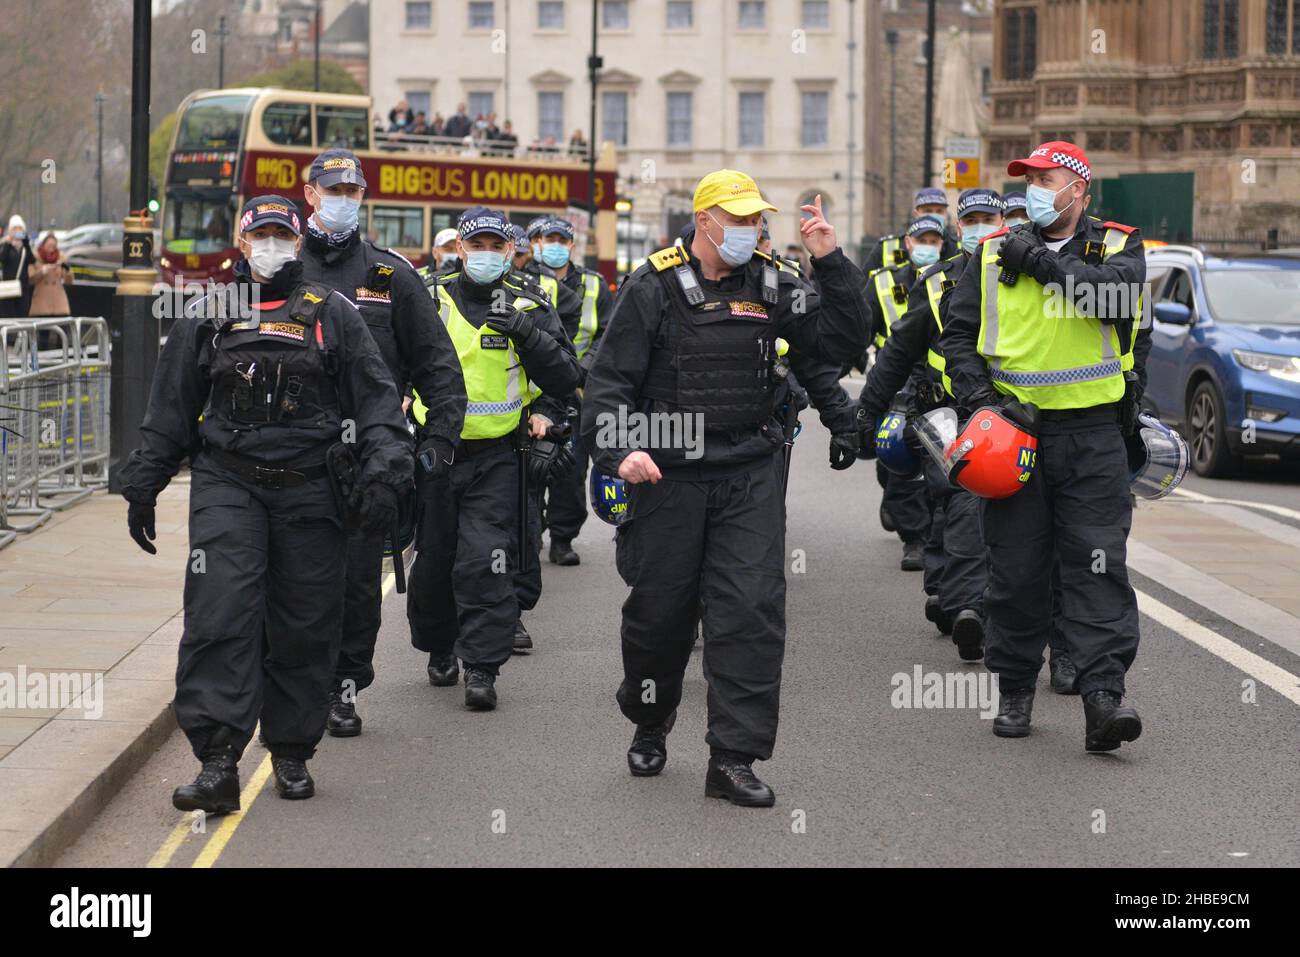 Des forces de police supplémentaires ont été vues à l'arrivée sur le site de la manifestation.Les manifestants anti-vaccin et anti-vaccin ont rejoint les opposants aux restrictions de Covid 19, se sont rassemblés sur la place du Parlement et ont défilé dans le centre de Londres. Banque D'Images